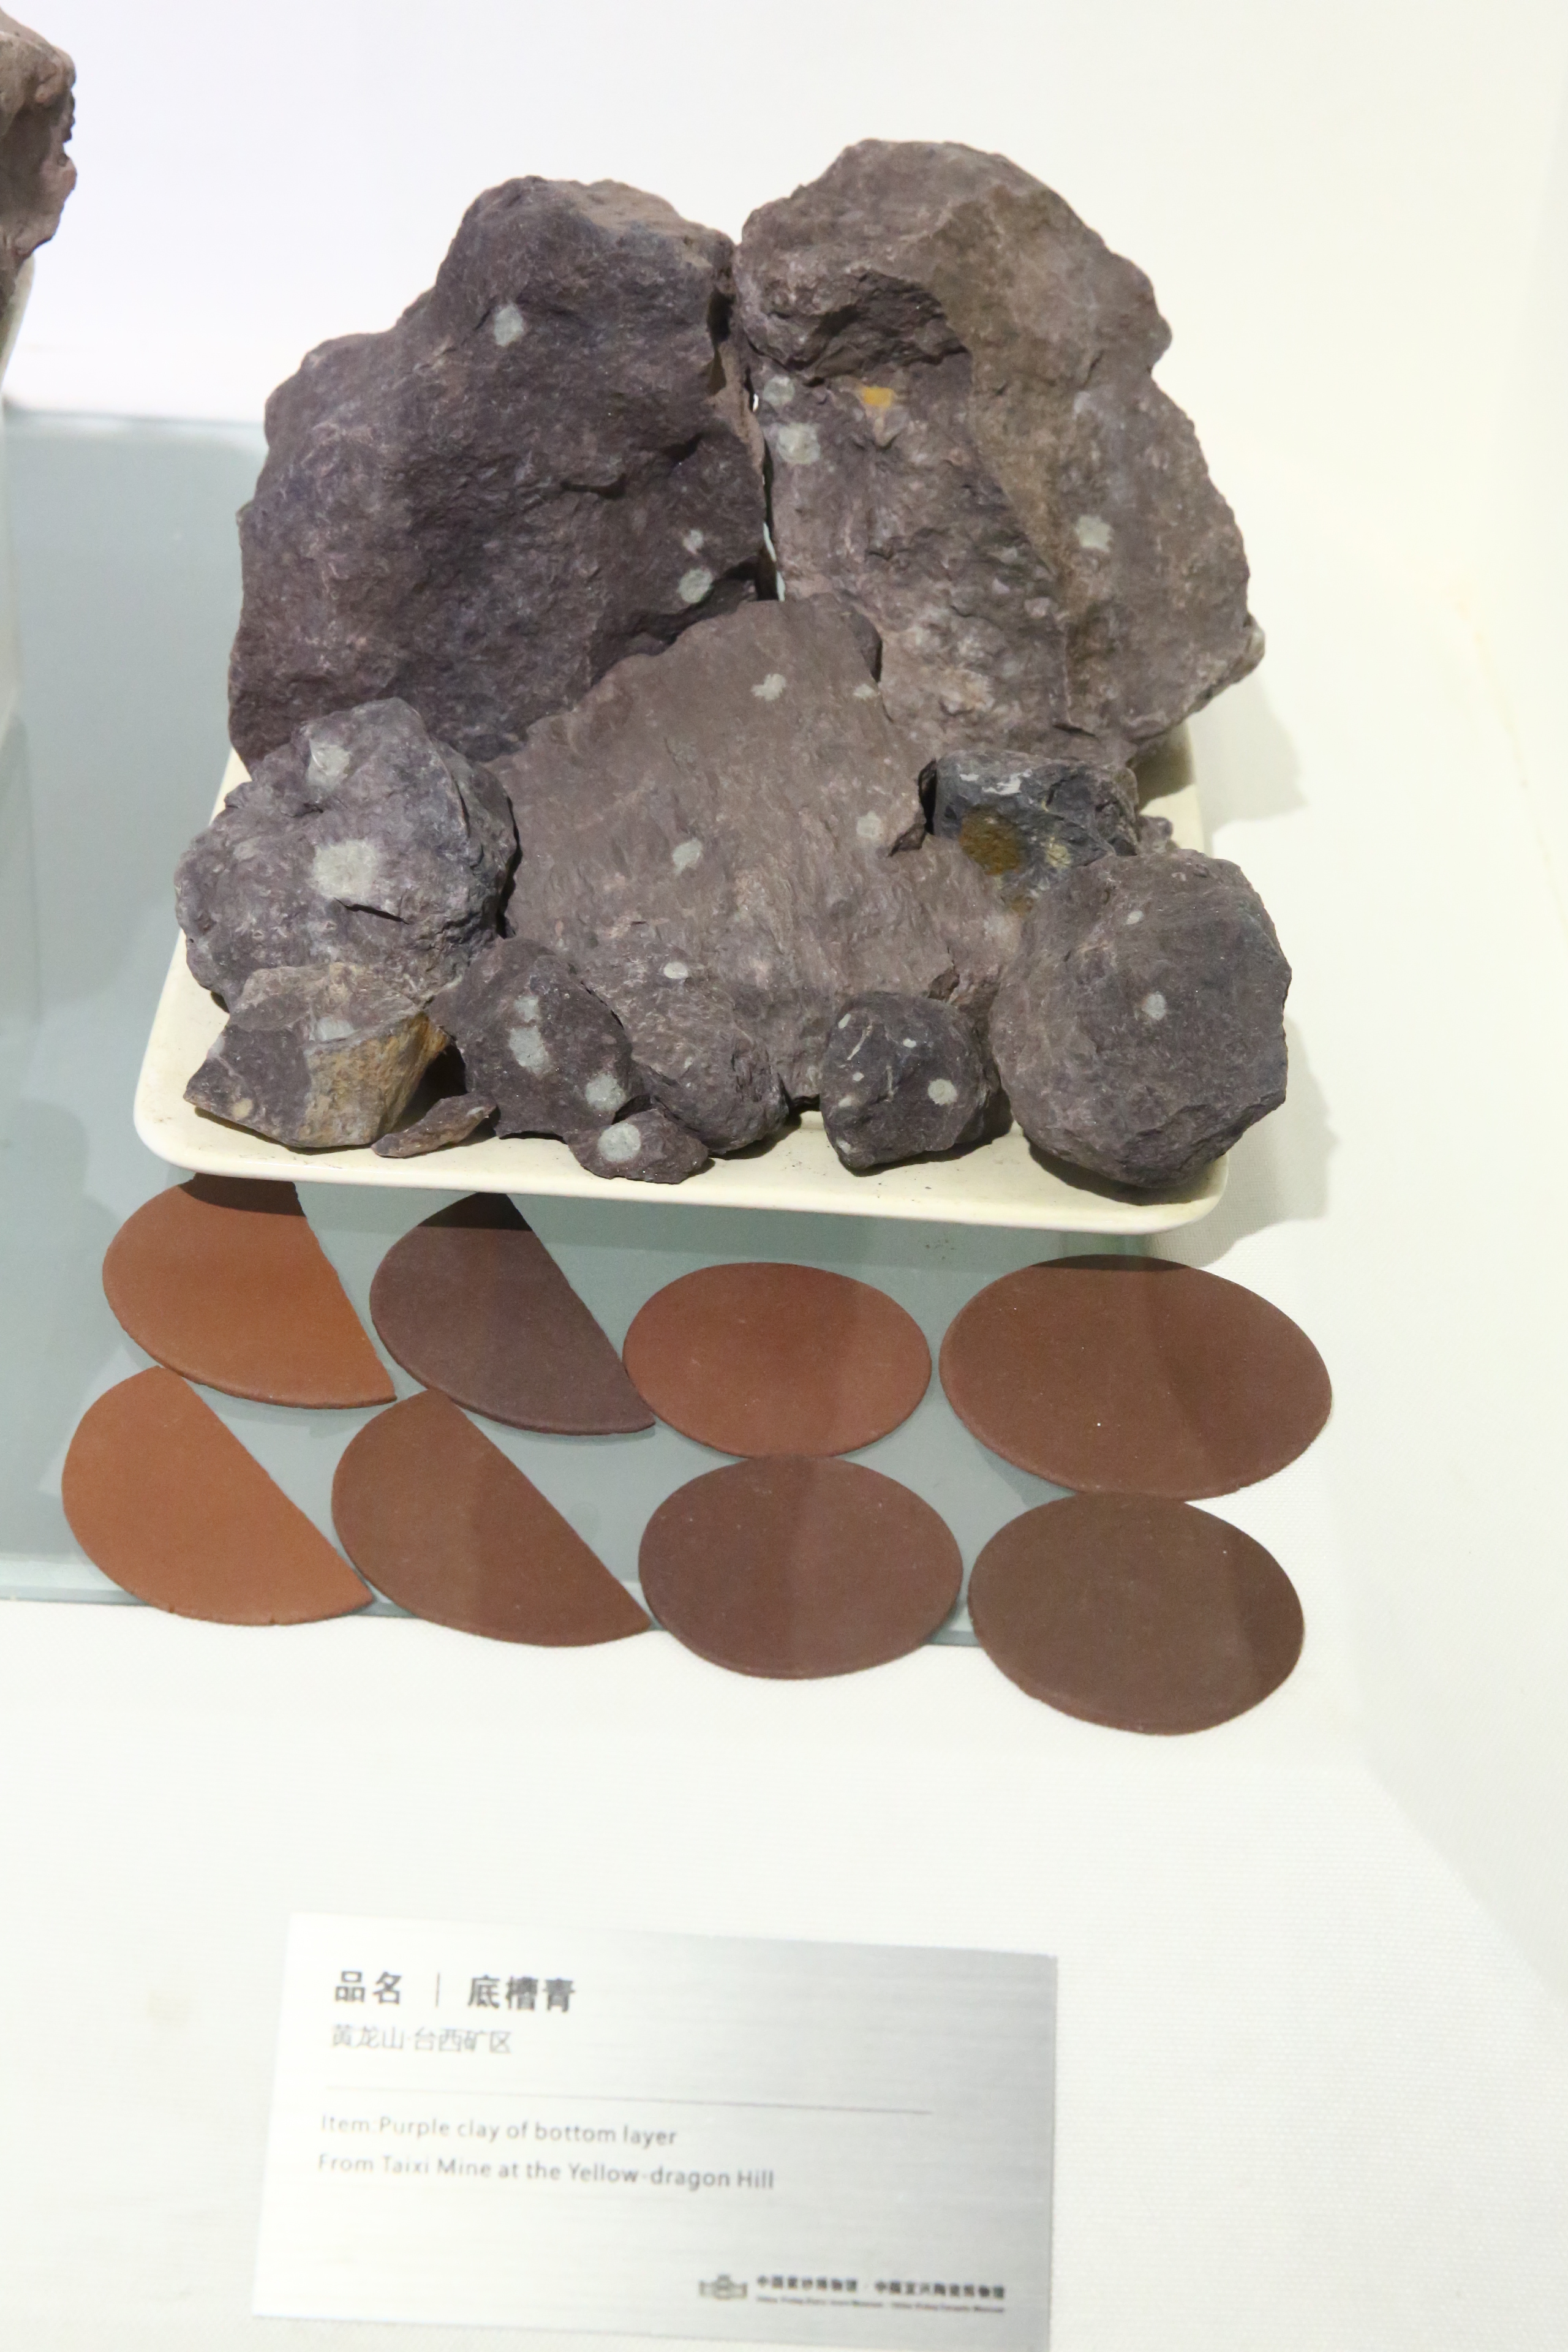 陶瓷博物館展出底槽青礦石